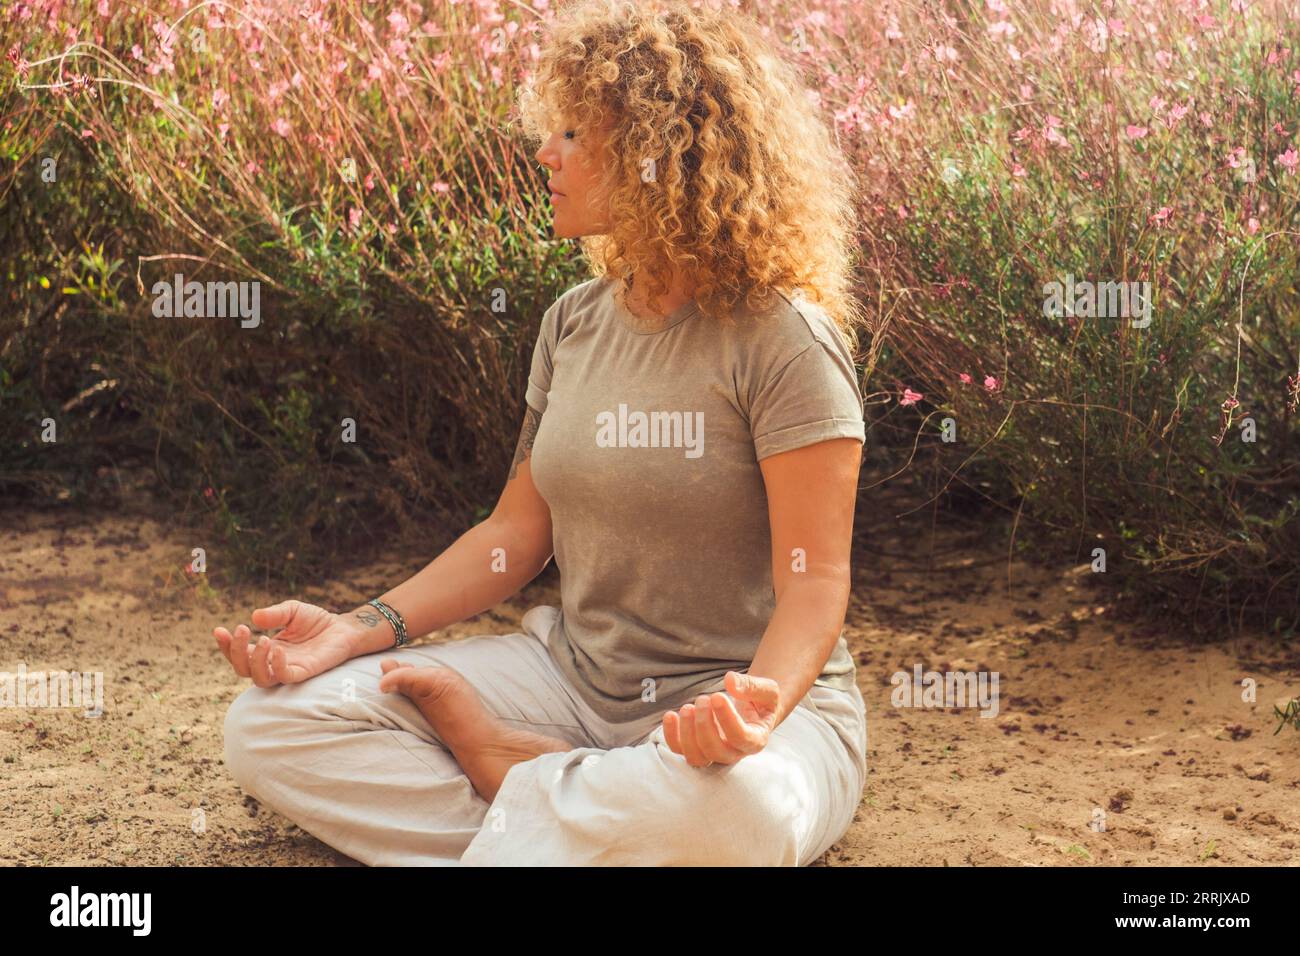 Outdoor-Meditationsübung für positiven Lebensstil und Wohlbefinden. Menschen genießen Yoga-Routine sitzend auf dem Boden in der Nähe von Blumen.nette gesunde Frau in Lotus-Position und geschlossene Augen. Zenlike Leben Stockfoto